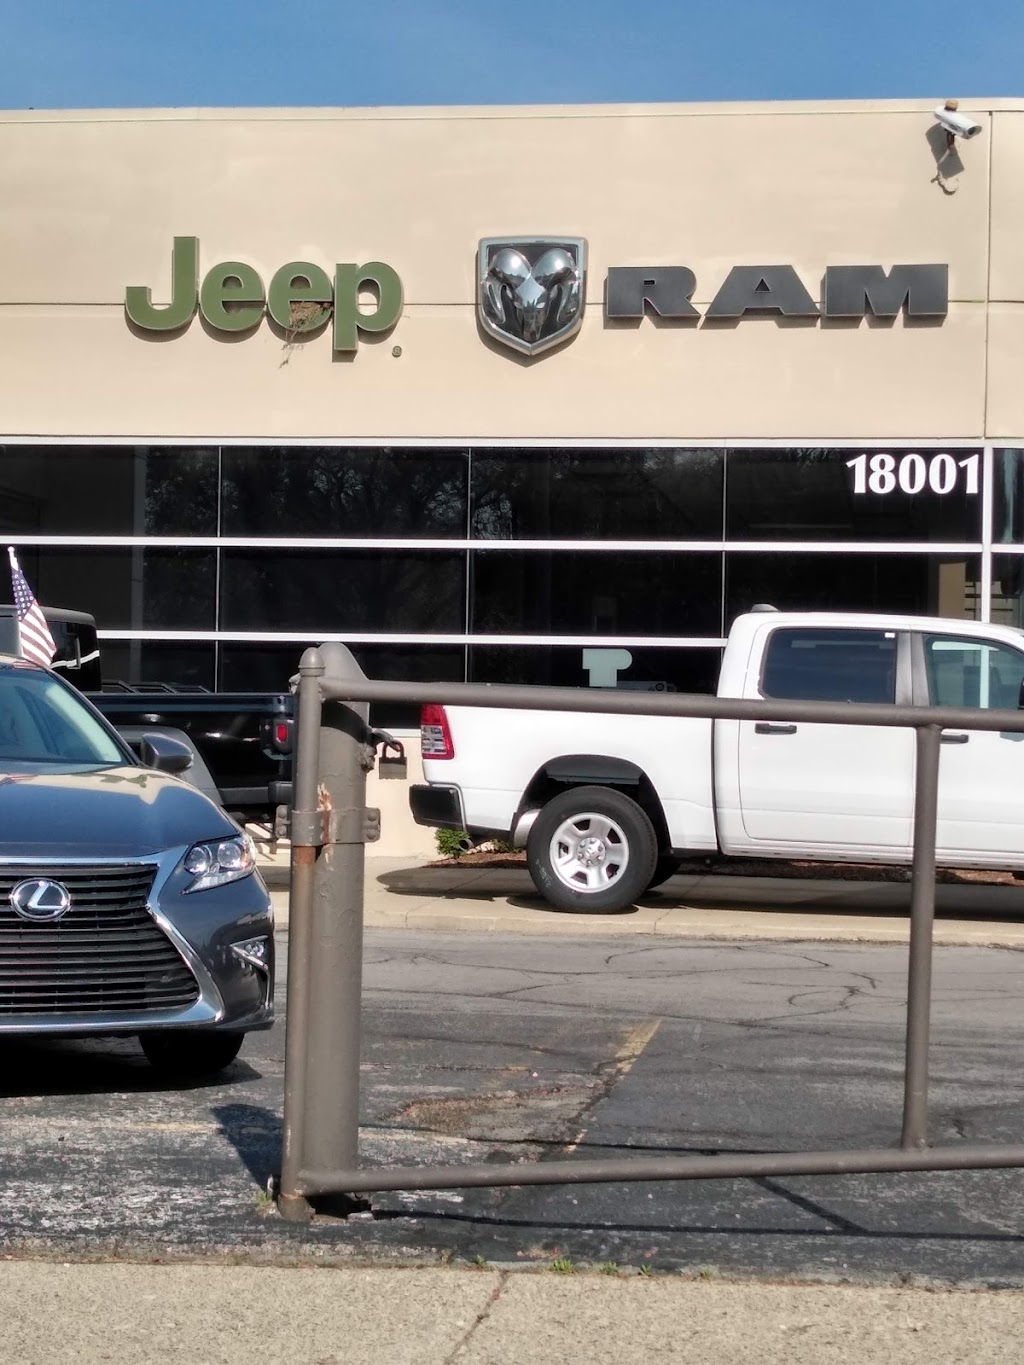 Ray Laethem Chrysler Dodge Jeep Ram | 18001 Mack Ave, Detroit, MI 48224, USA | Phone: (313) 884-7210